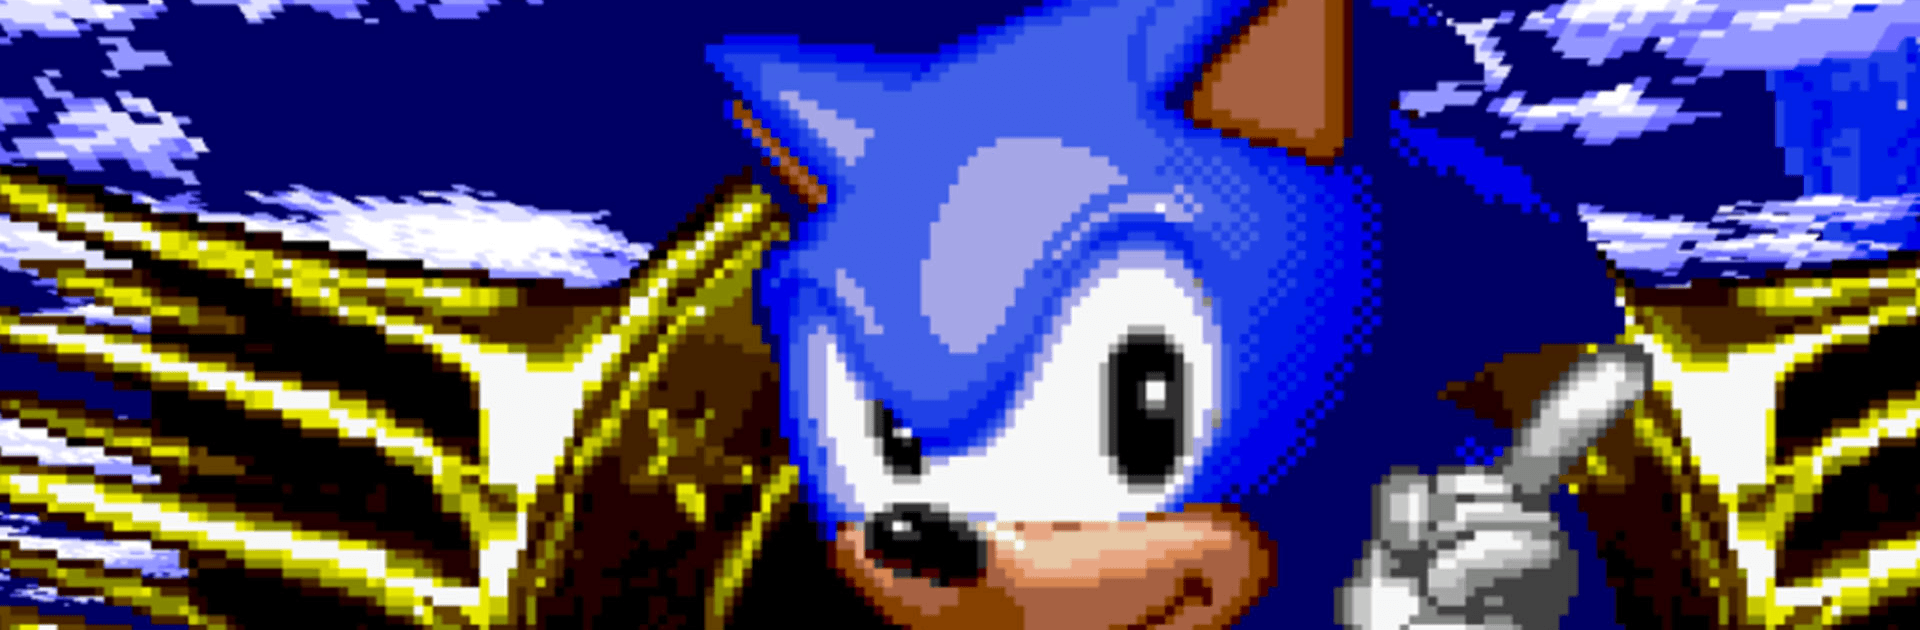 Baixar & Jogar Sonic the Hedgehog Classic no PC & Mac (Emulador)